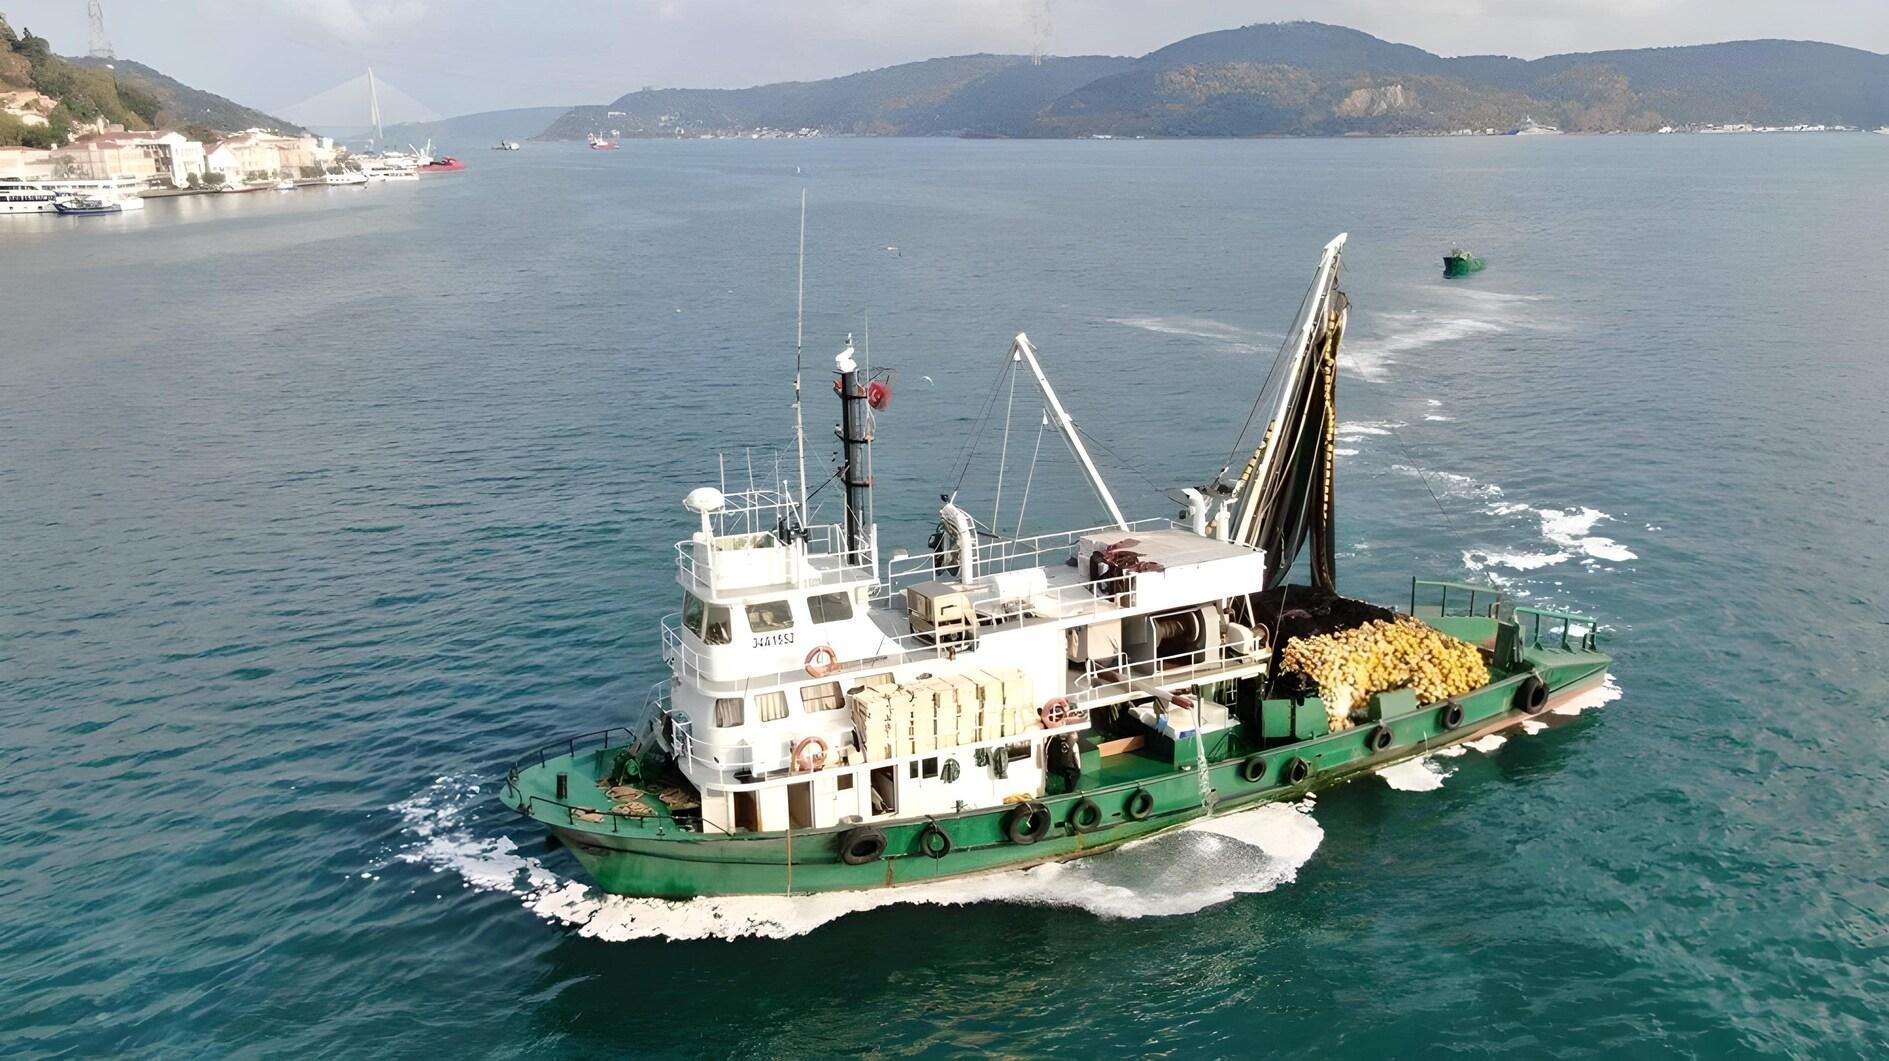 Beweringen over de kustvisserij in de Bosporus leiden tot discussie